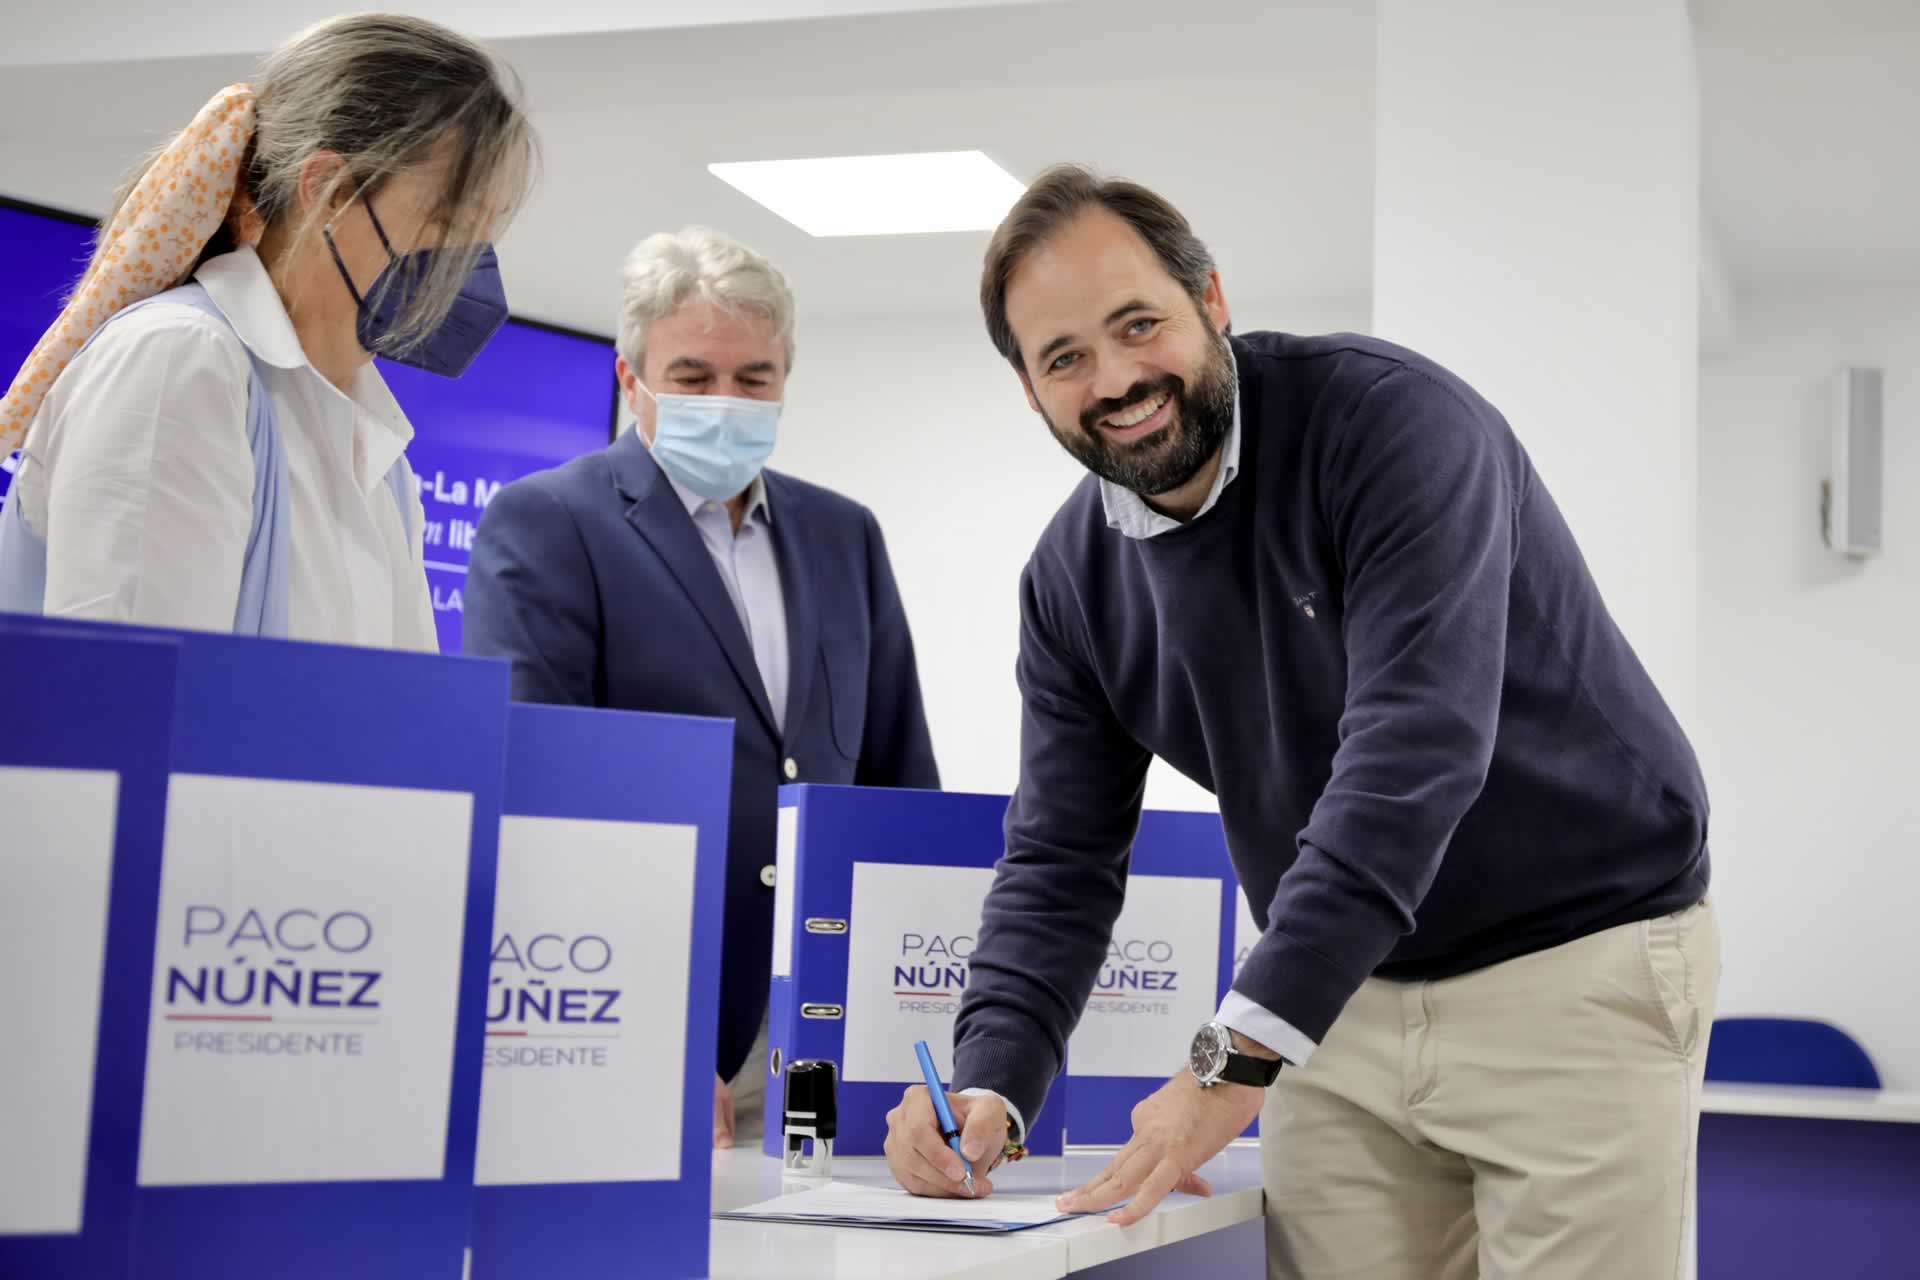 Núñez recibe un “apoyo masivo” a su candidatura con más de 8.000 avales